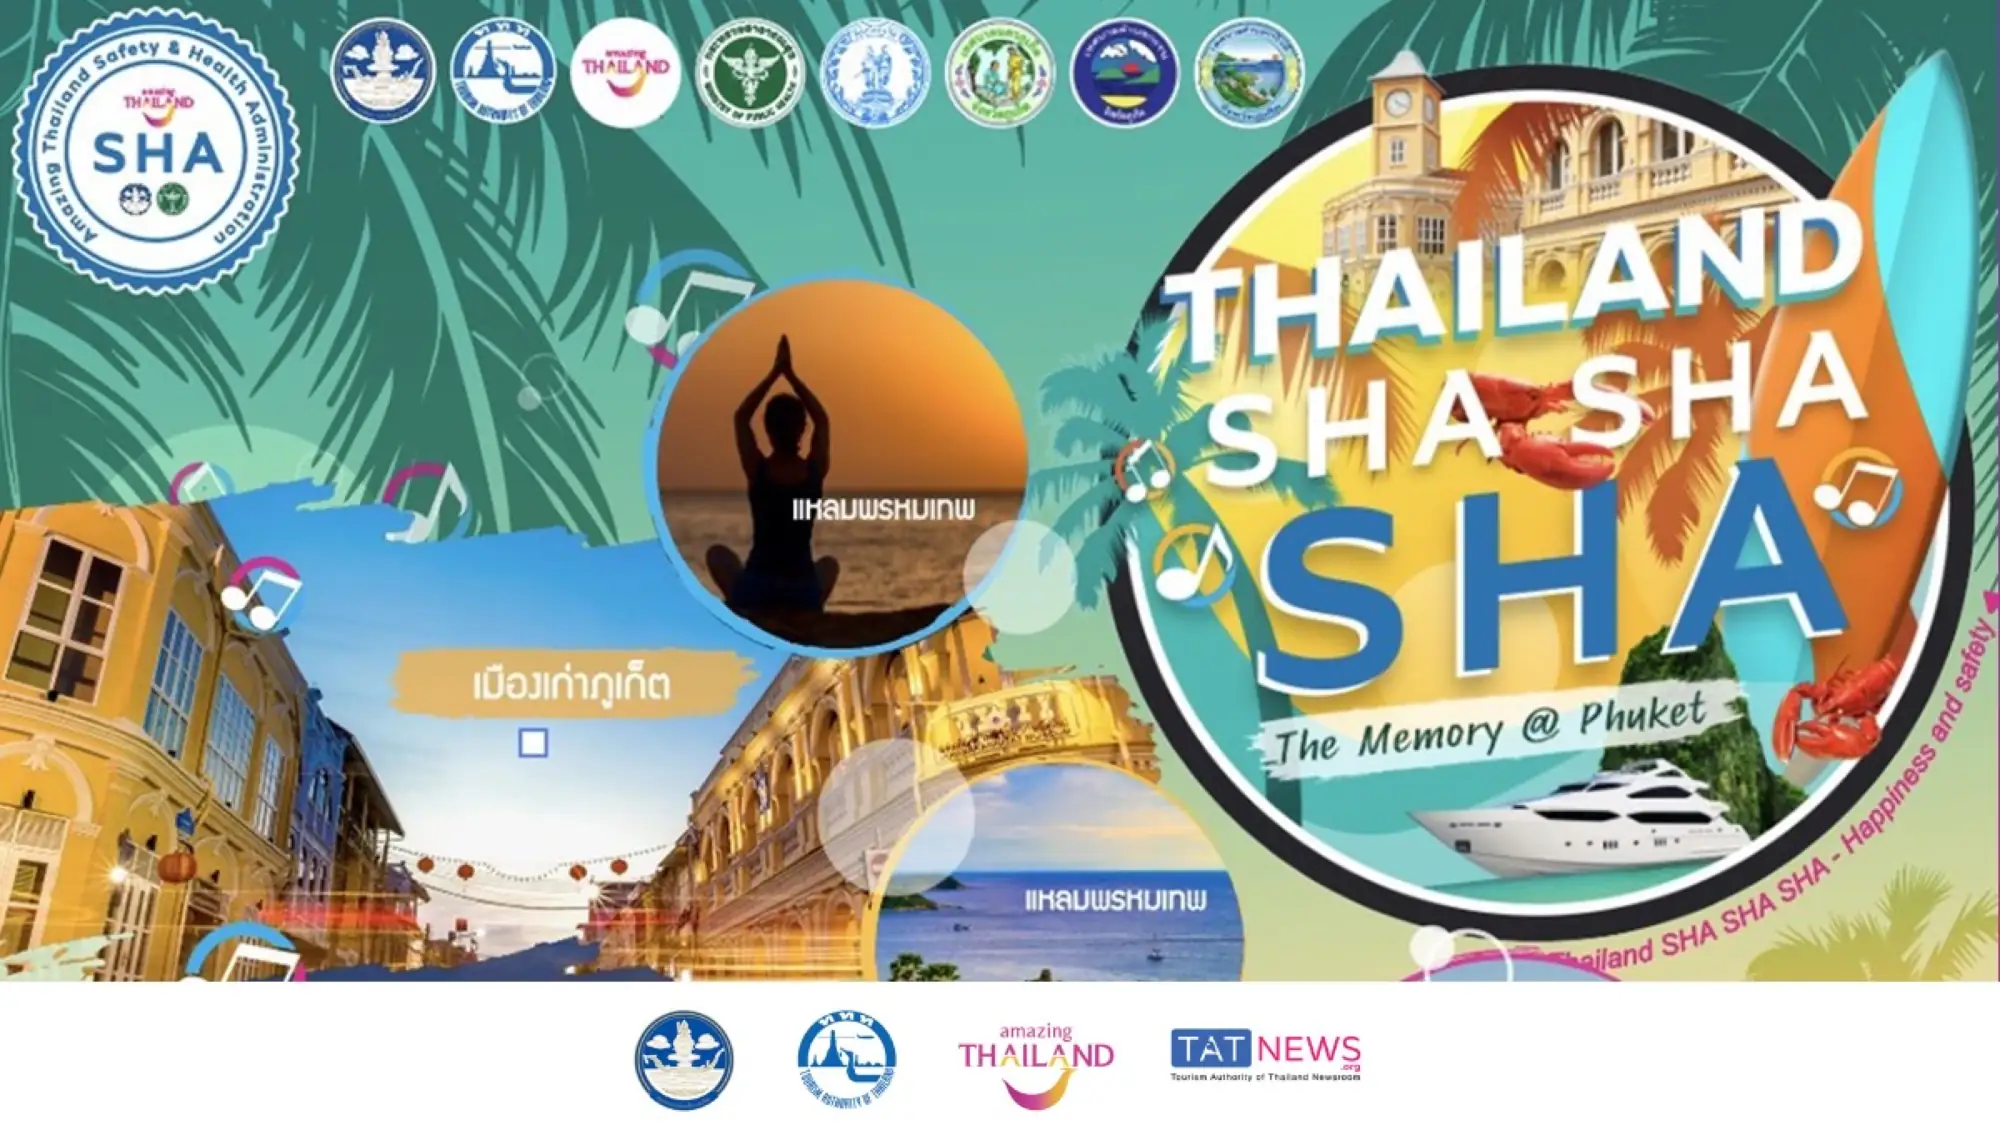 「泰国 SHA SHA SHA回忆中的安达曼」活动即日起展开(来源：泰旅局）